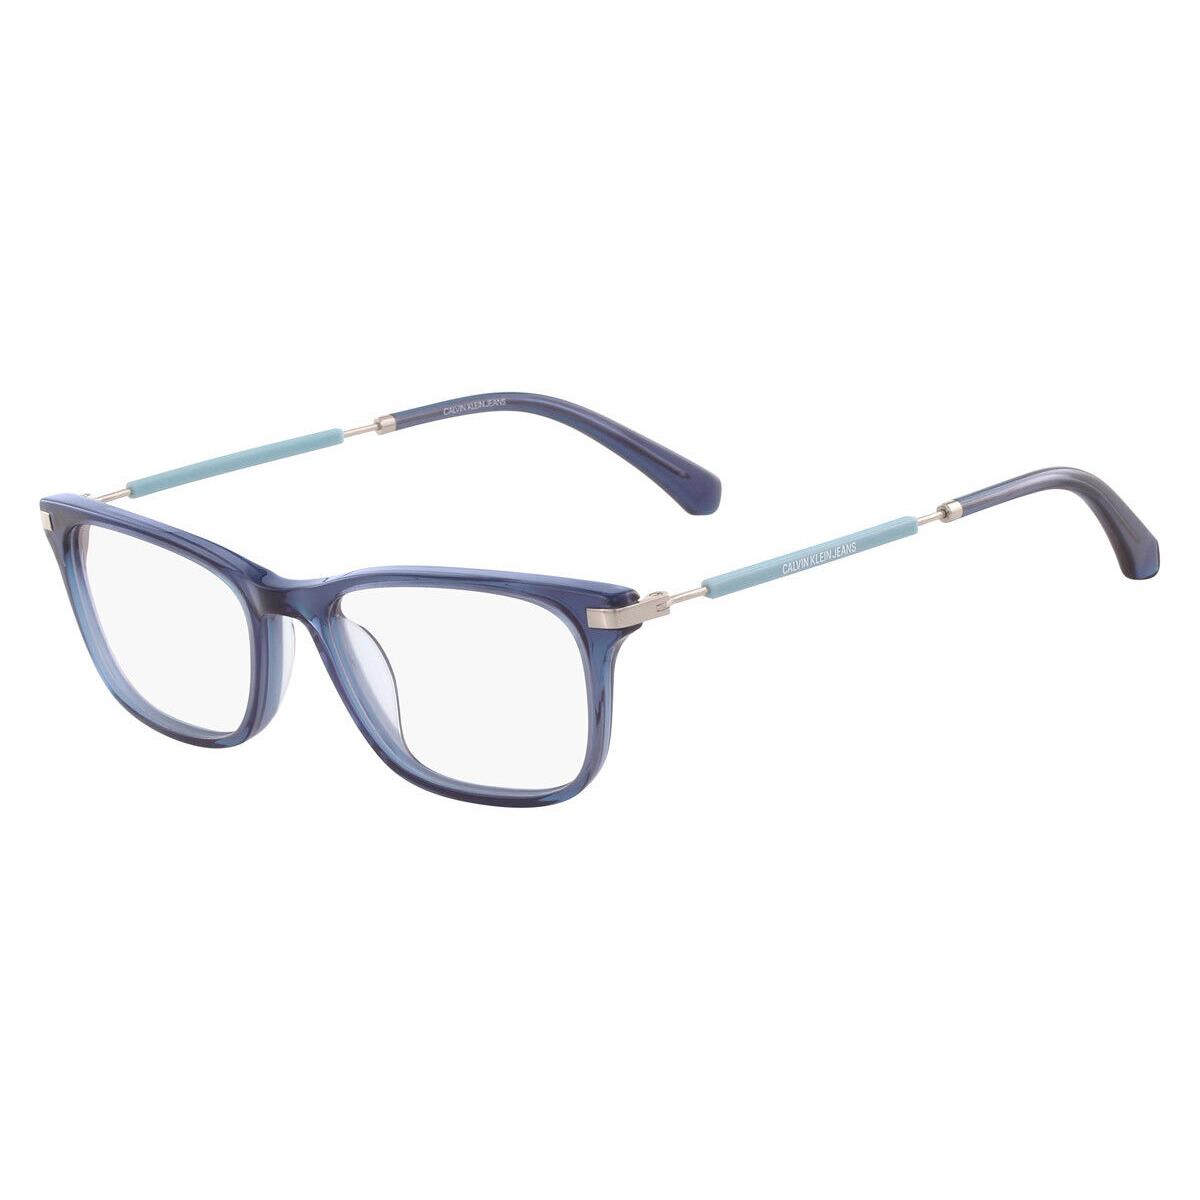 Calvin Klein CKJ18705 Eyeglasses Rectangle 51mm - Frame: Crystal Navy, Lens: Demo